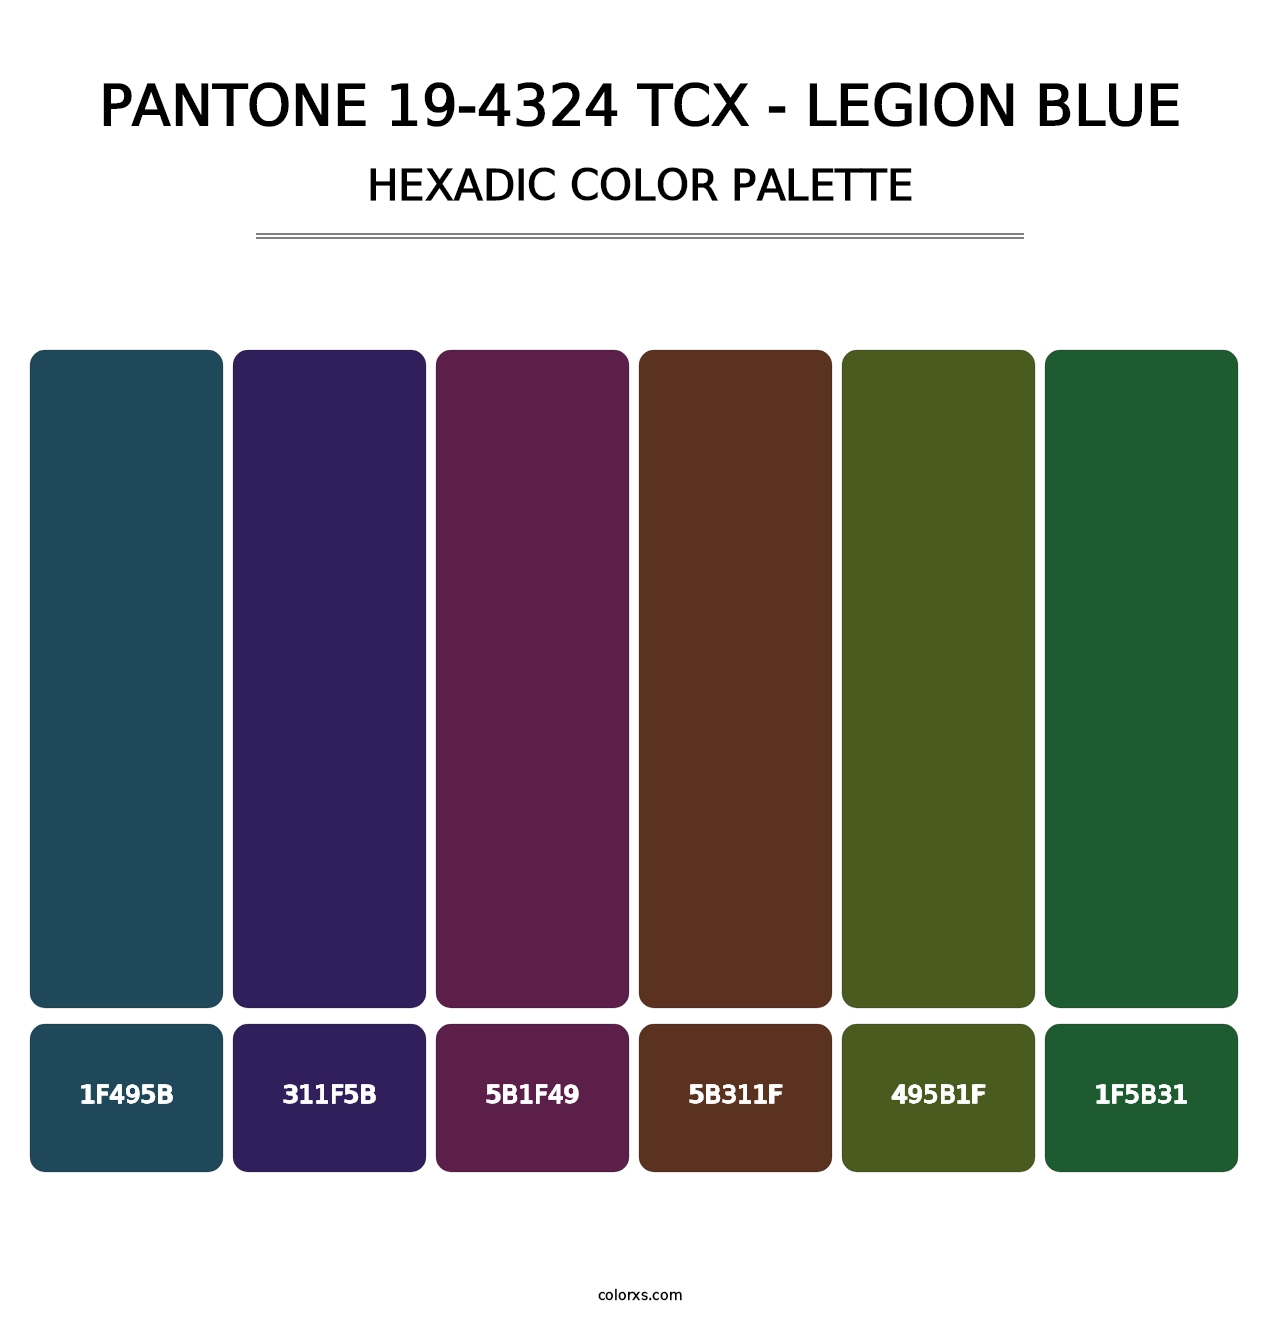 PANTONE 19-4324 TCX - Legion Blue - Hexadic Color Palette